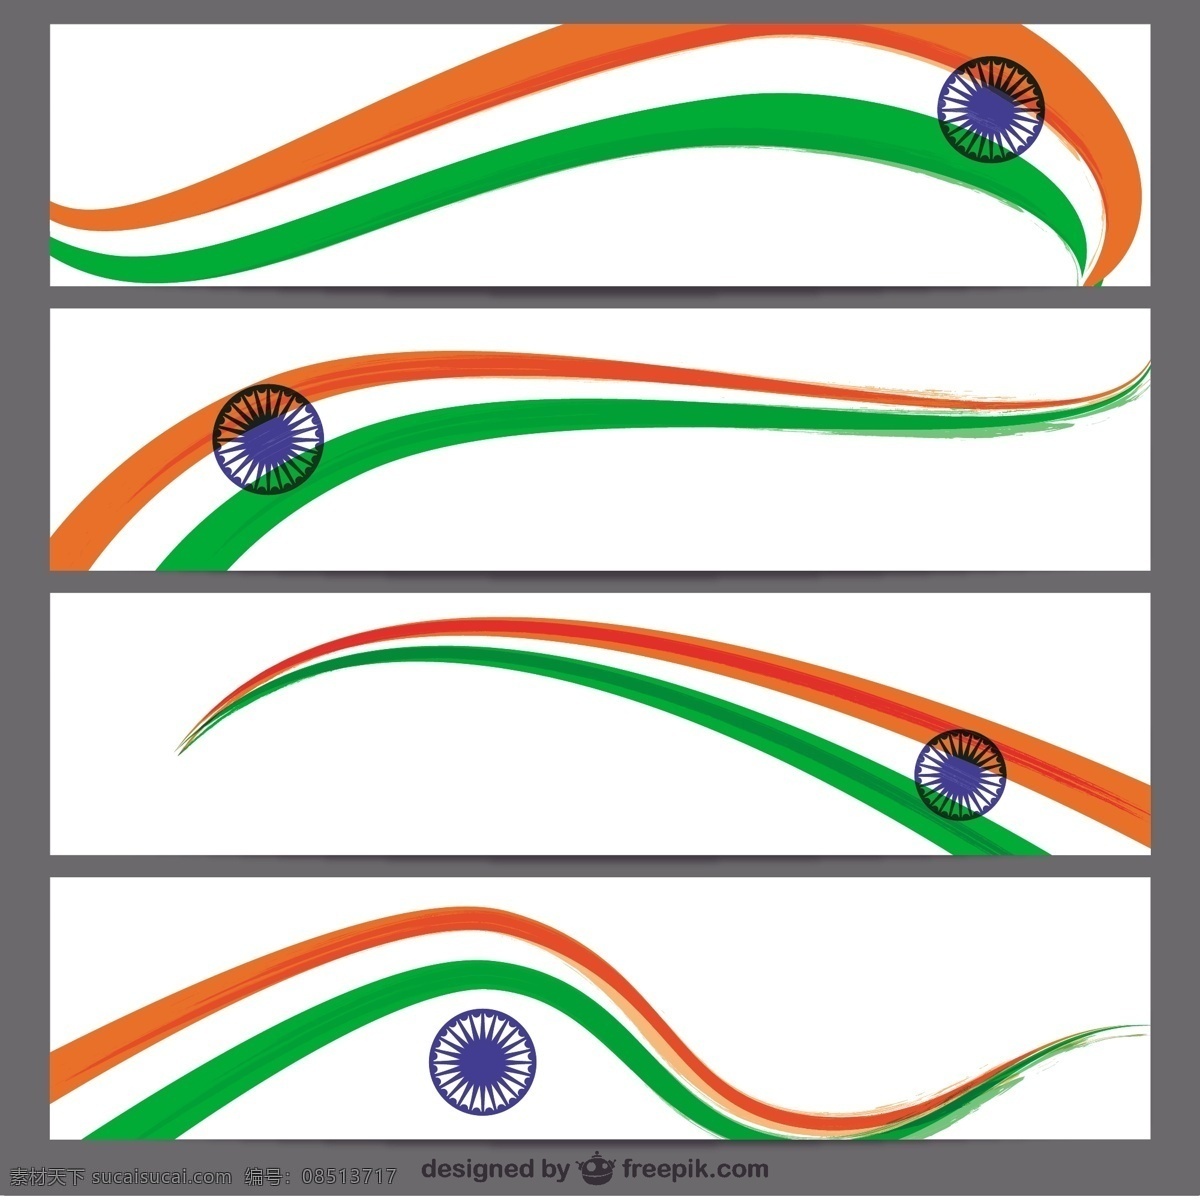 印度国旗旗帜 旗帜 模板 印度 颜色 文具 印度国旗 独立日 国家 亚洲 一天 爱国 旗帜设计 独立 民族 共和国 爱国主义 白色